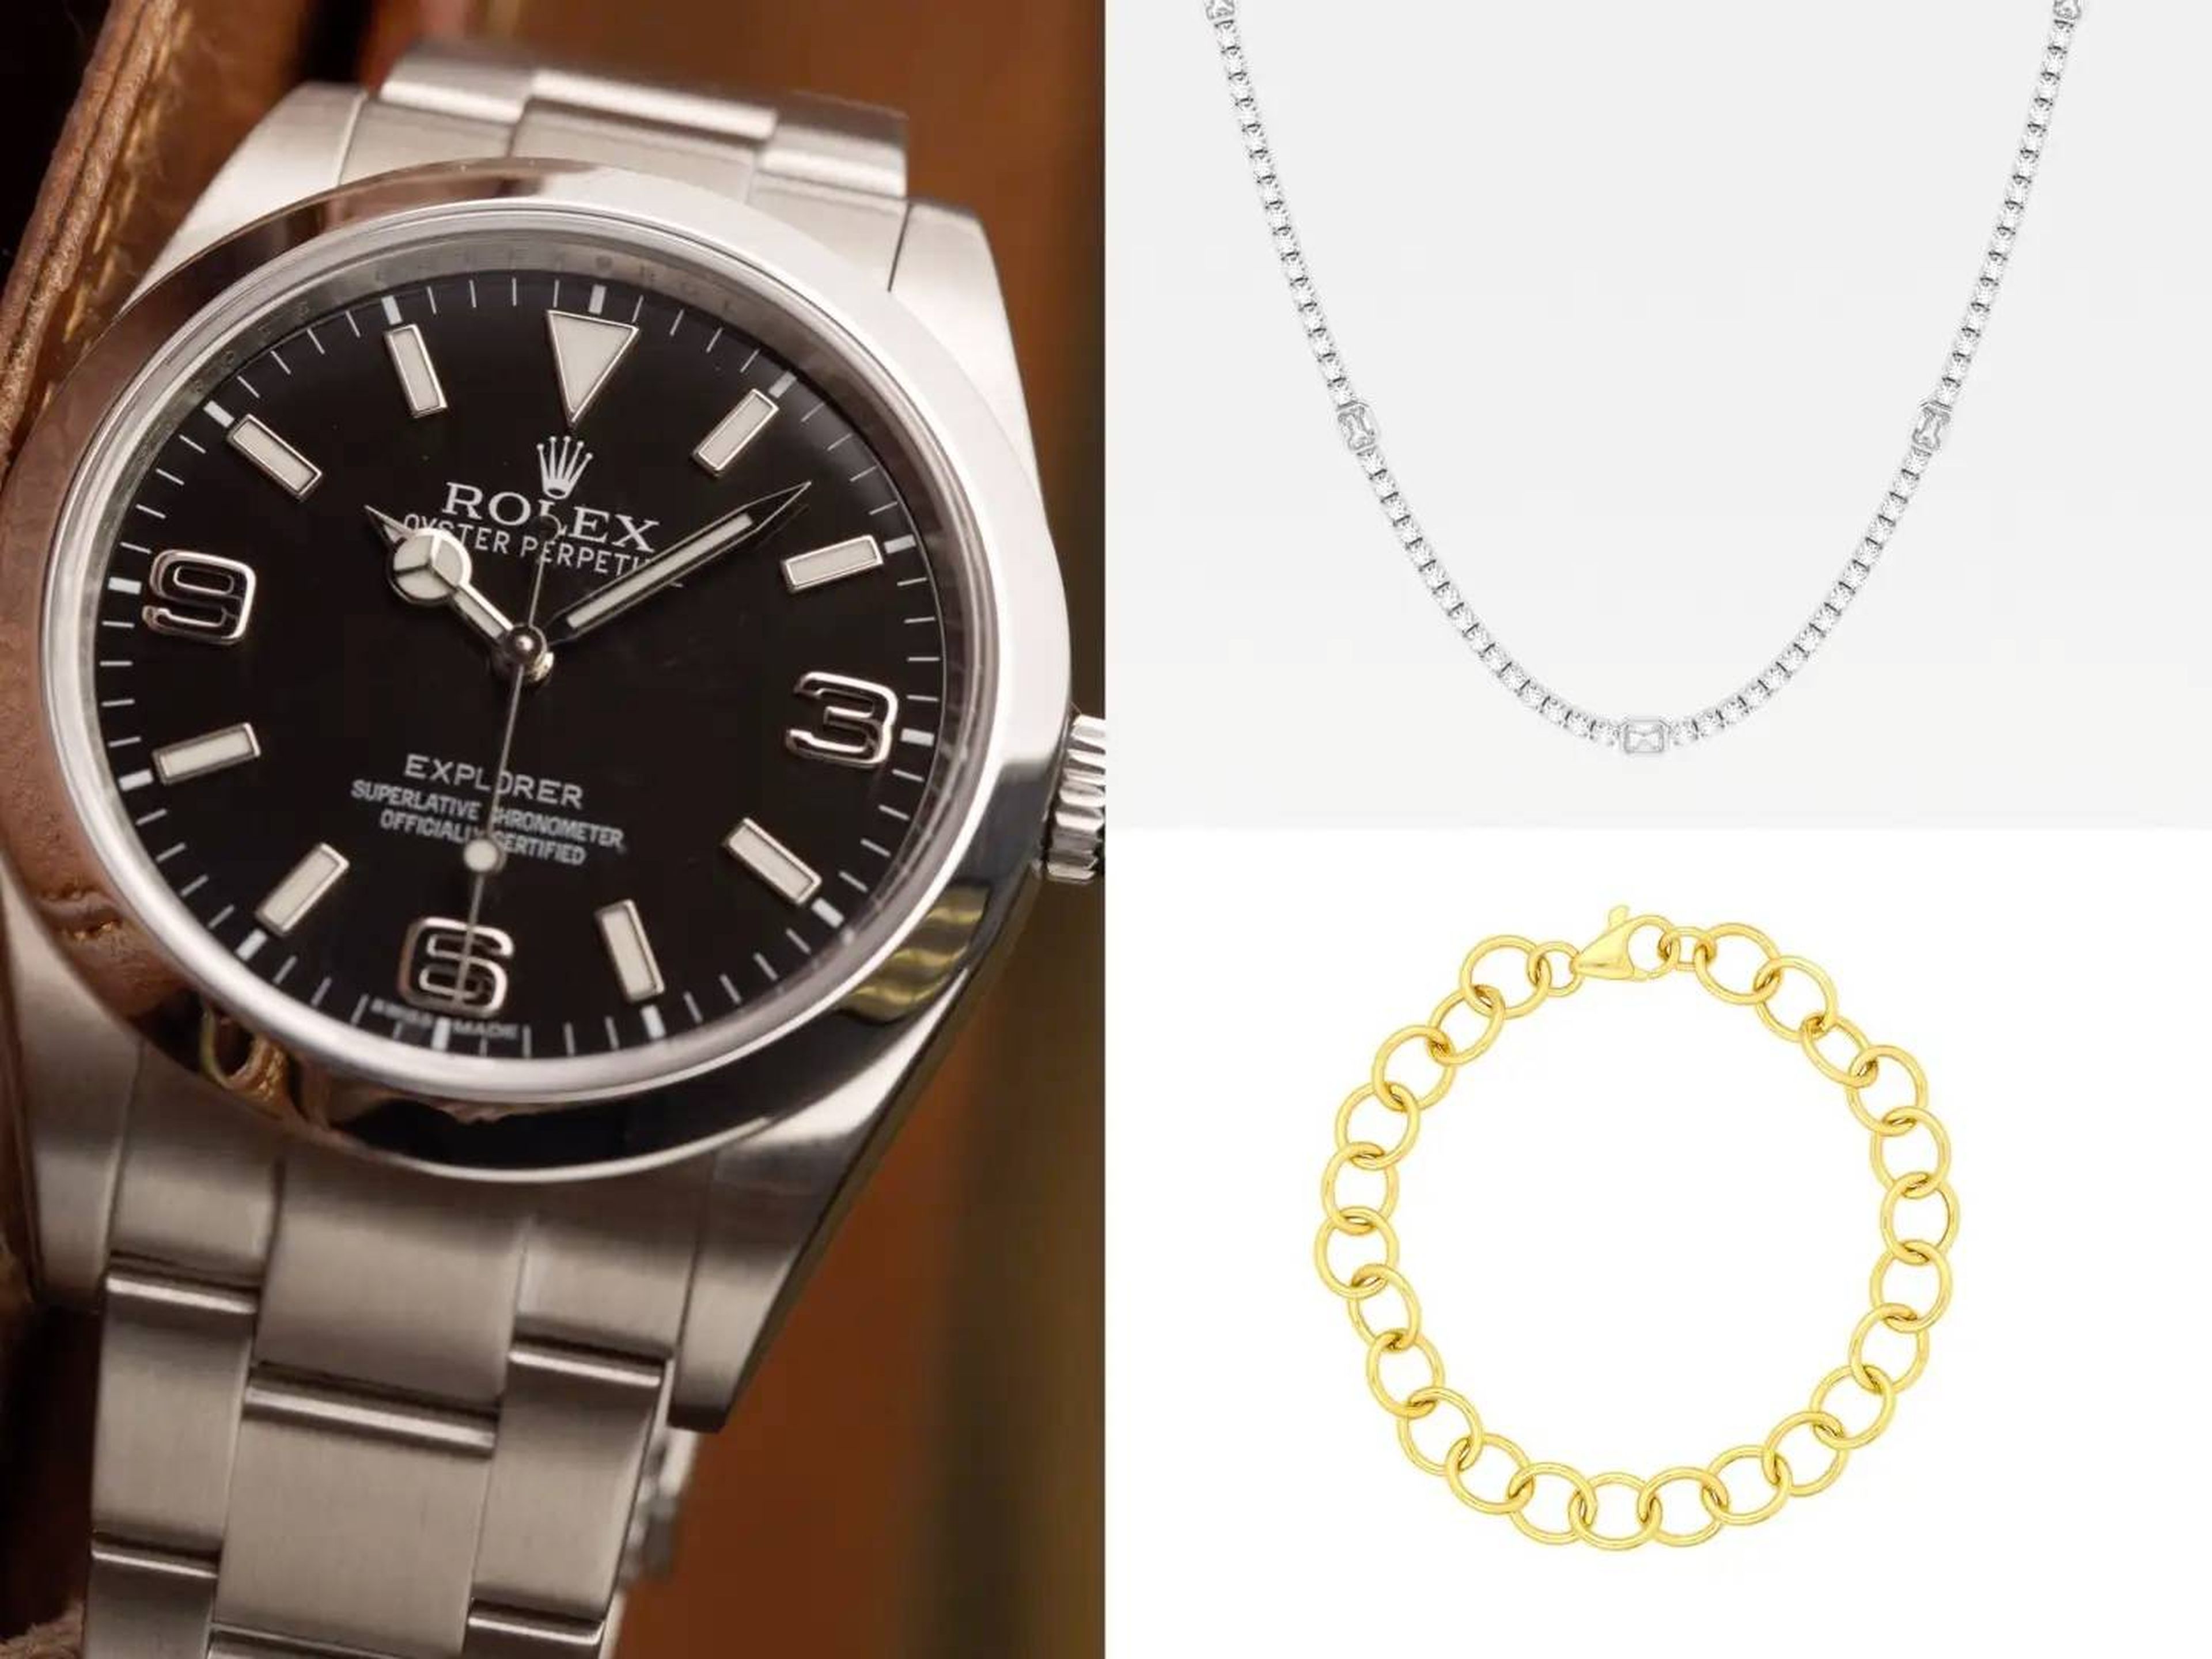 El Rolex Explorer (izquierda) cuesta más de 7.000 dólares, el collar de tenis Ritani (arriba a la derecha) cuesta 7.030 dólares y el brazalete de oro (abajo a la derecha) cuesta 970 dólares.